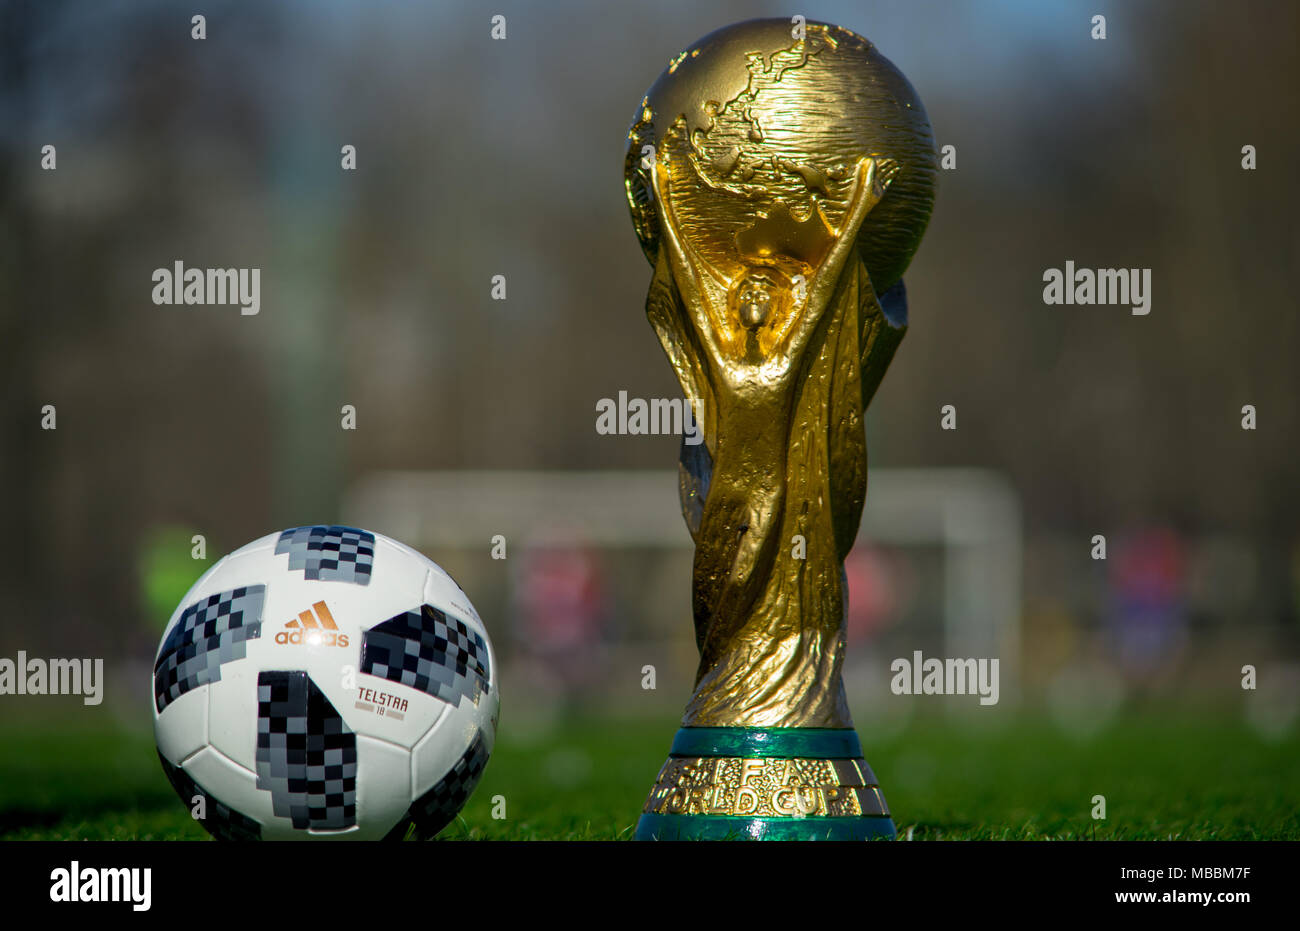 9 avril 2018 Moscou, Russie Trophée de la Coupe du Monde de la Fifa et ballon officiel de la Coupe du Monde FIFA 2018 Adidas Telstar 18 sur l'herbe verte du footbal Banque D'Images